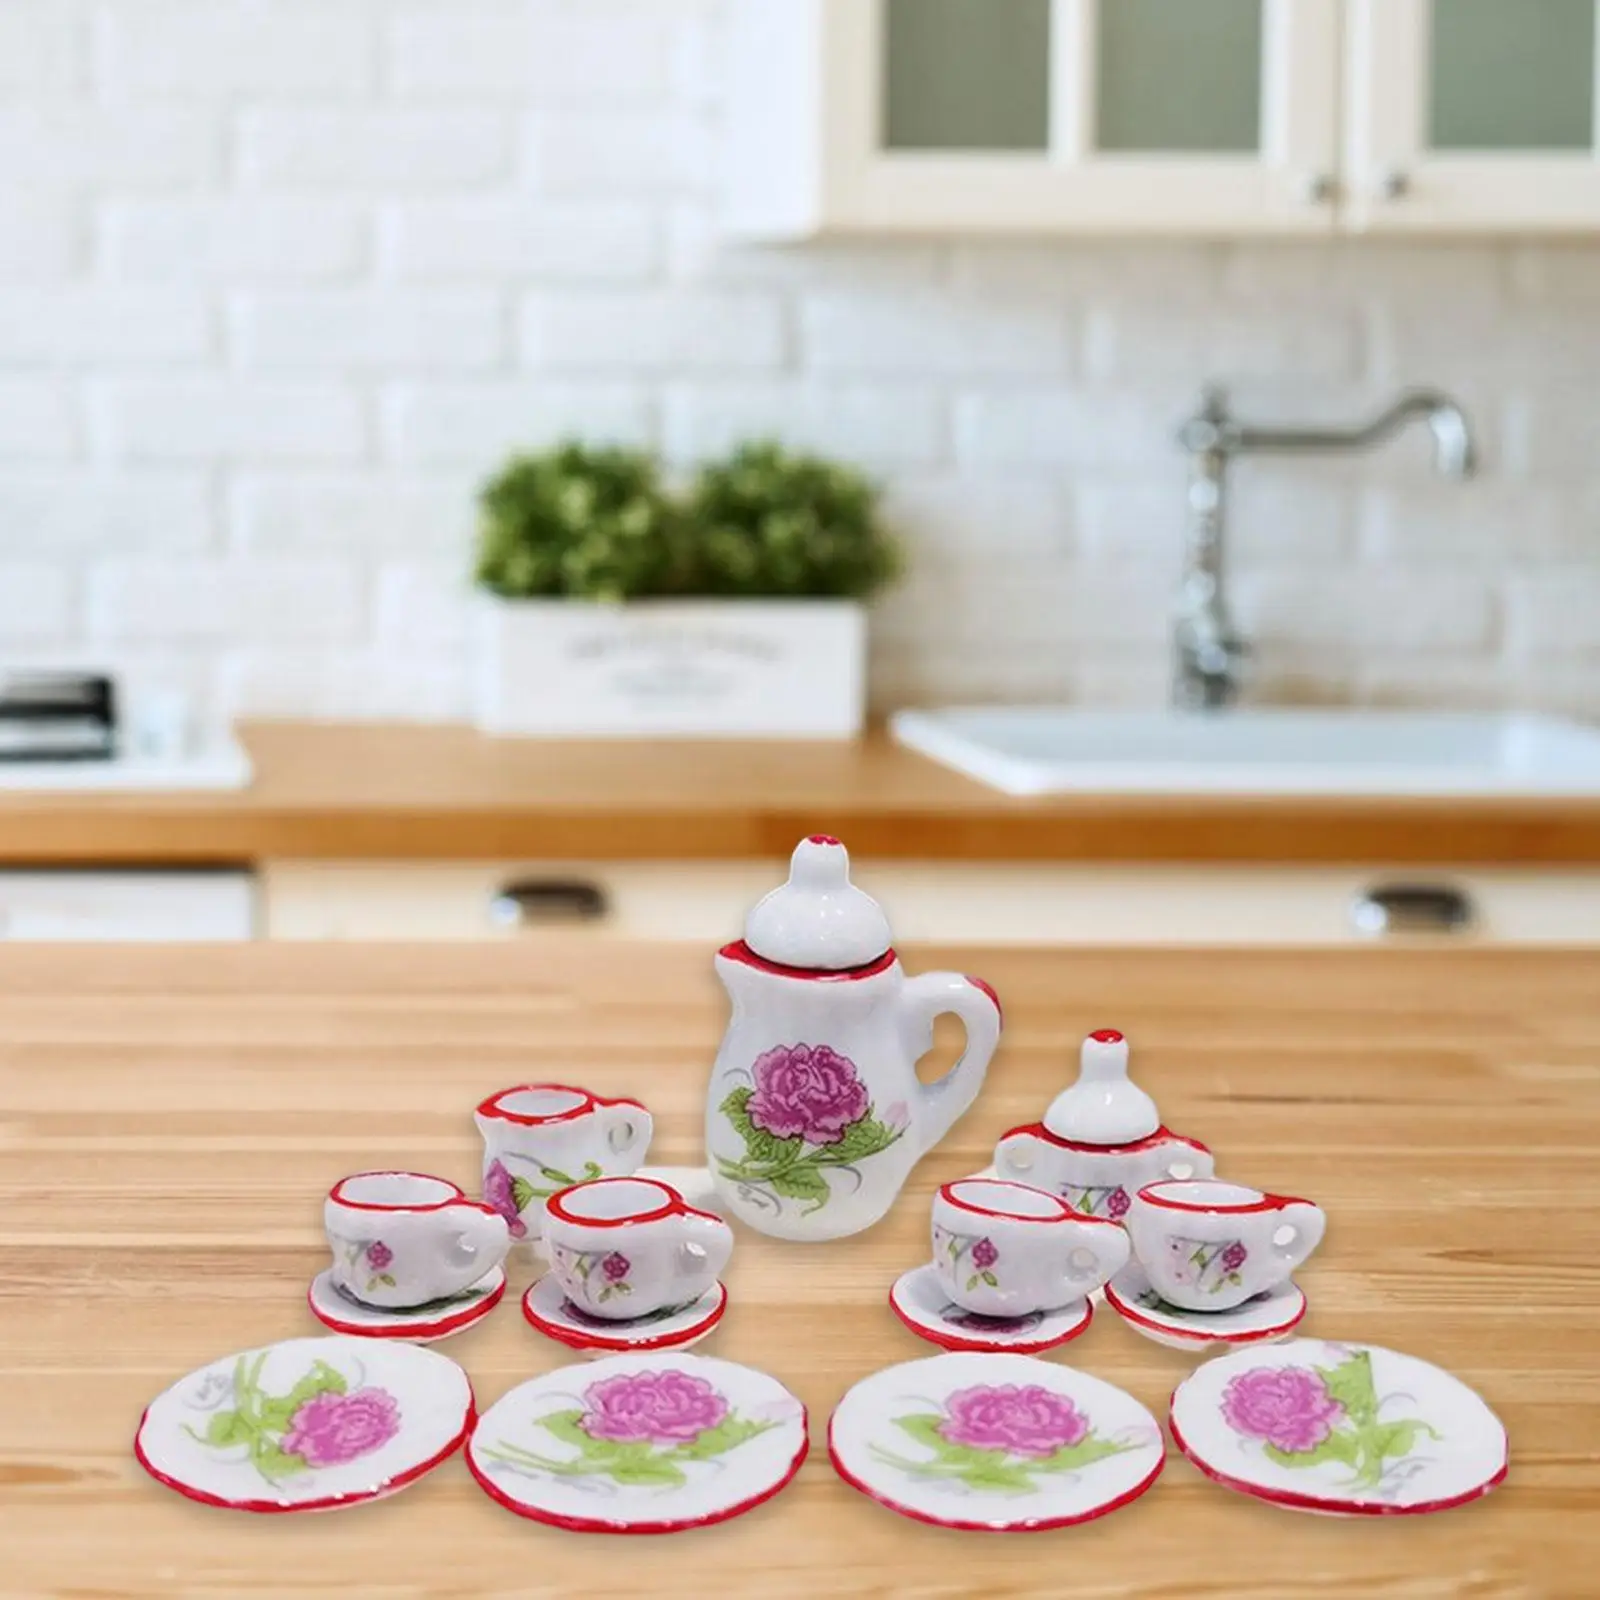 1:12 Dollhouse Miniature Porcelain Tea Cup Micro Landscape Kitchen Decor